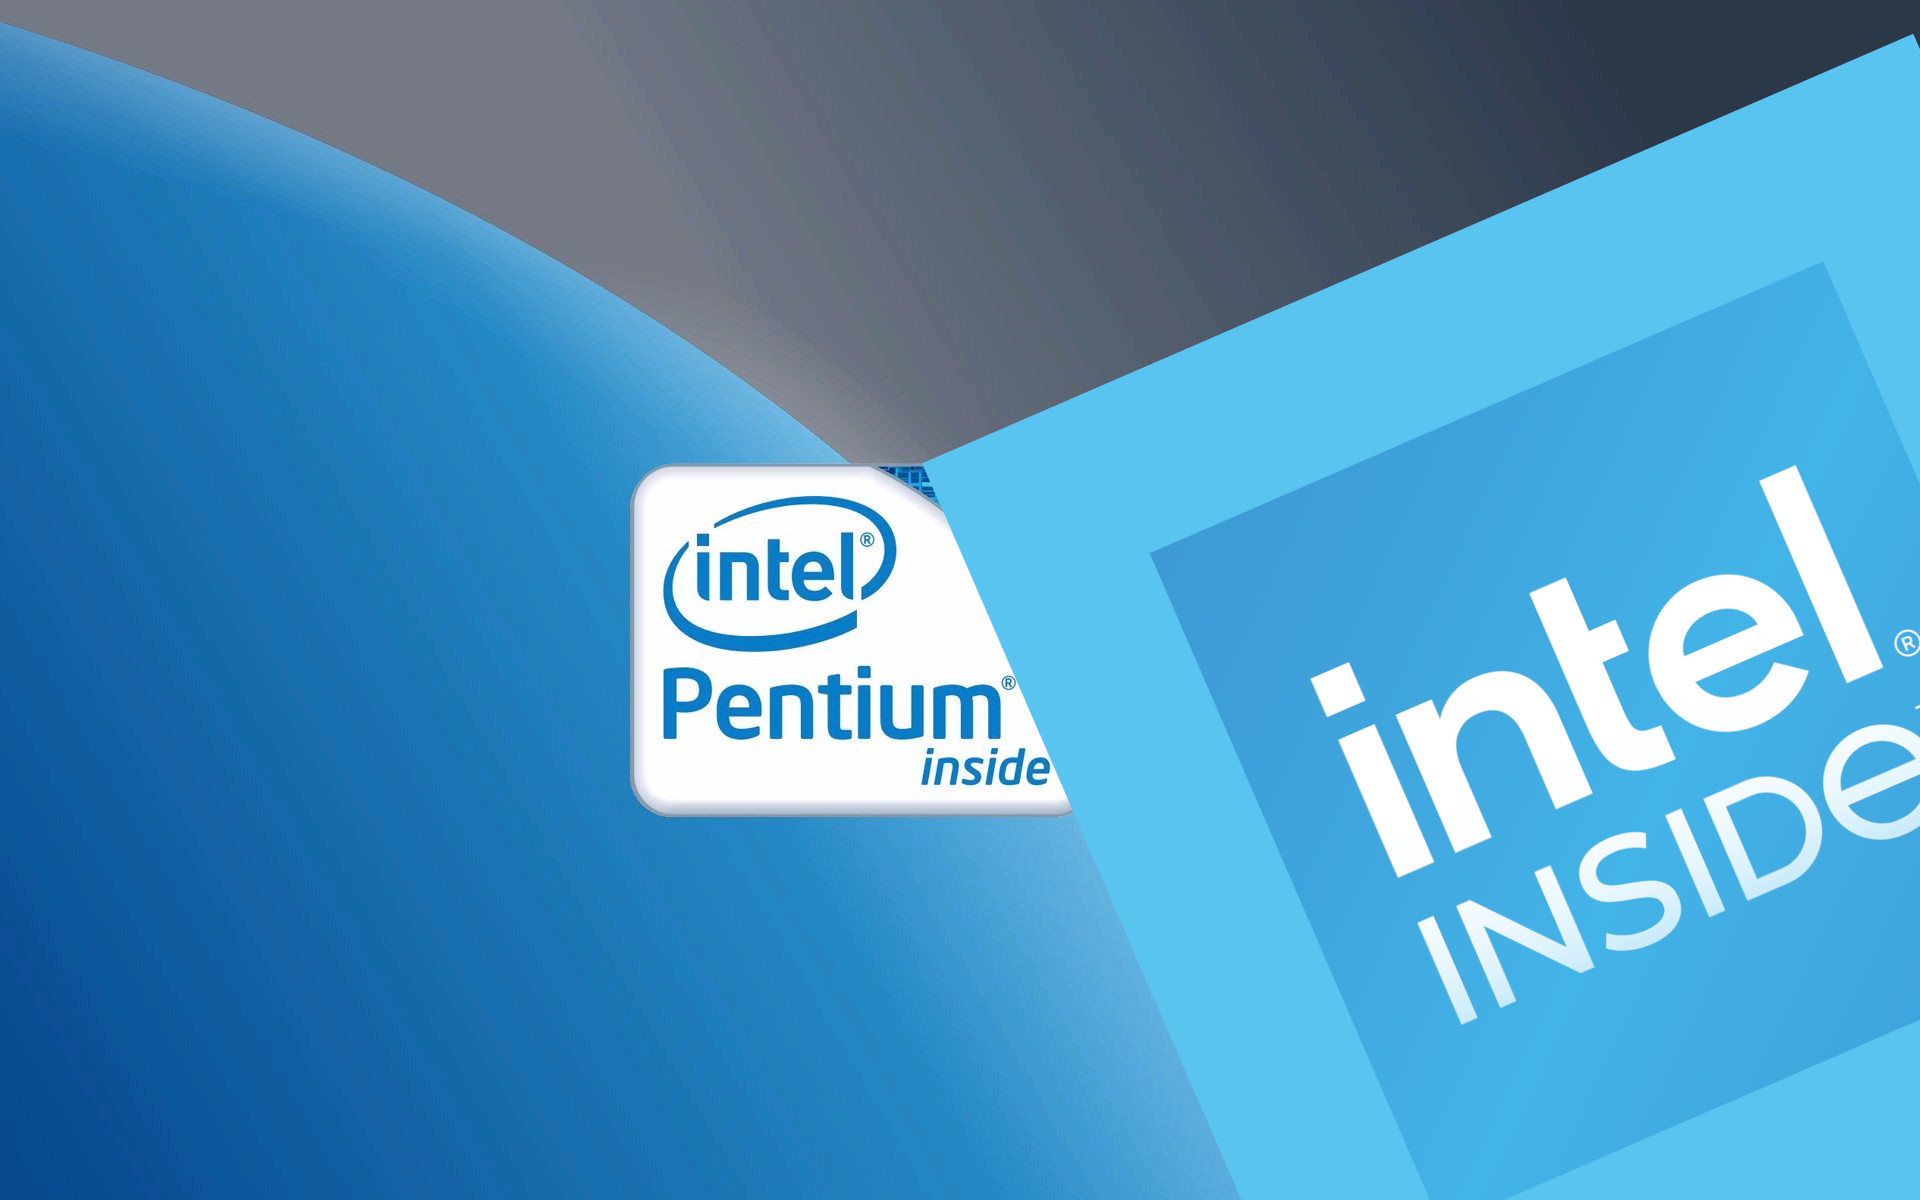 2023-tl az Intel Inside felirat kerl az olcsbb laptopokra.